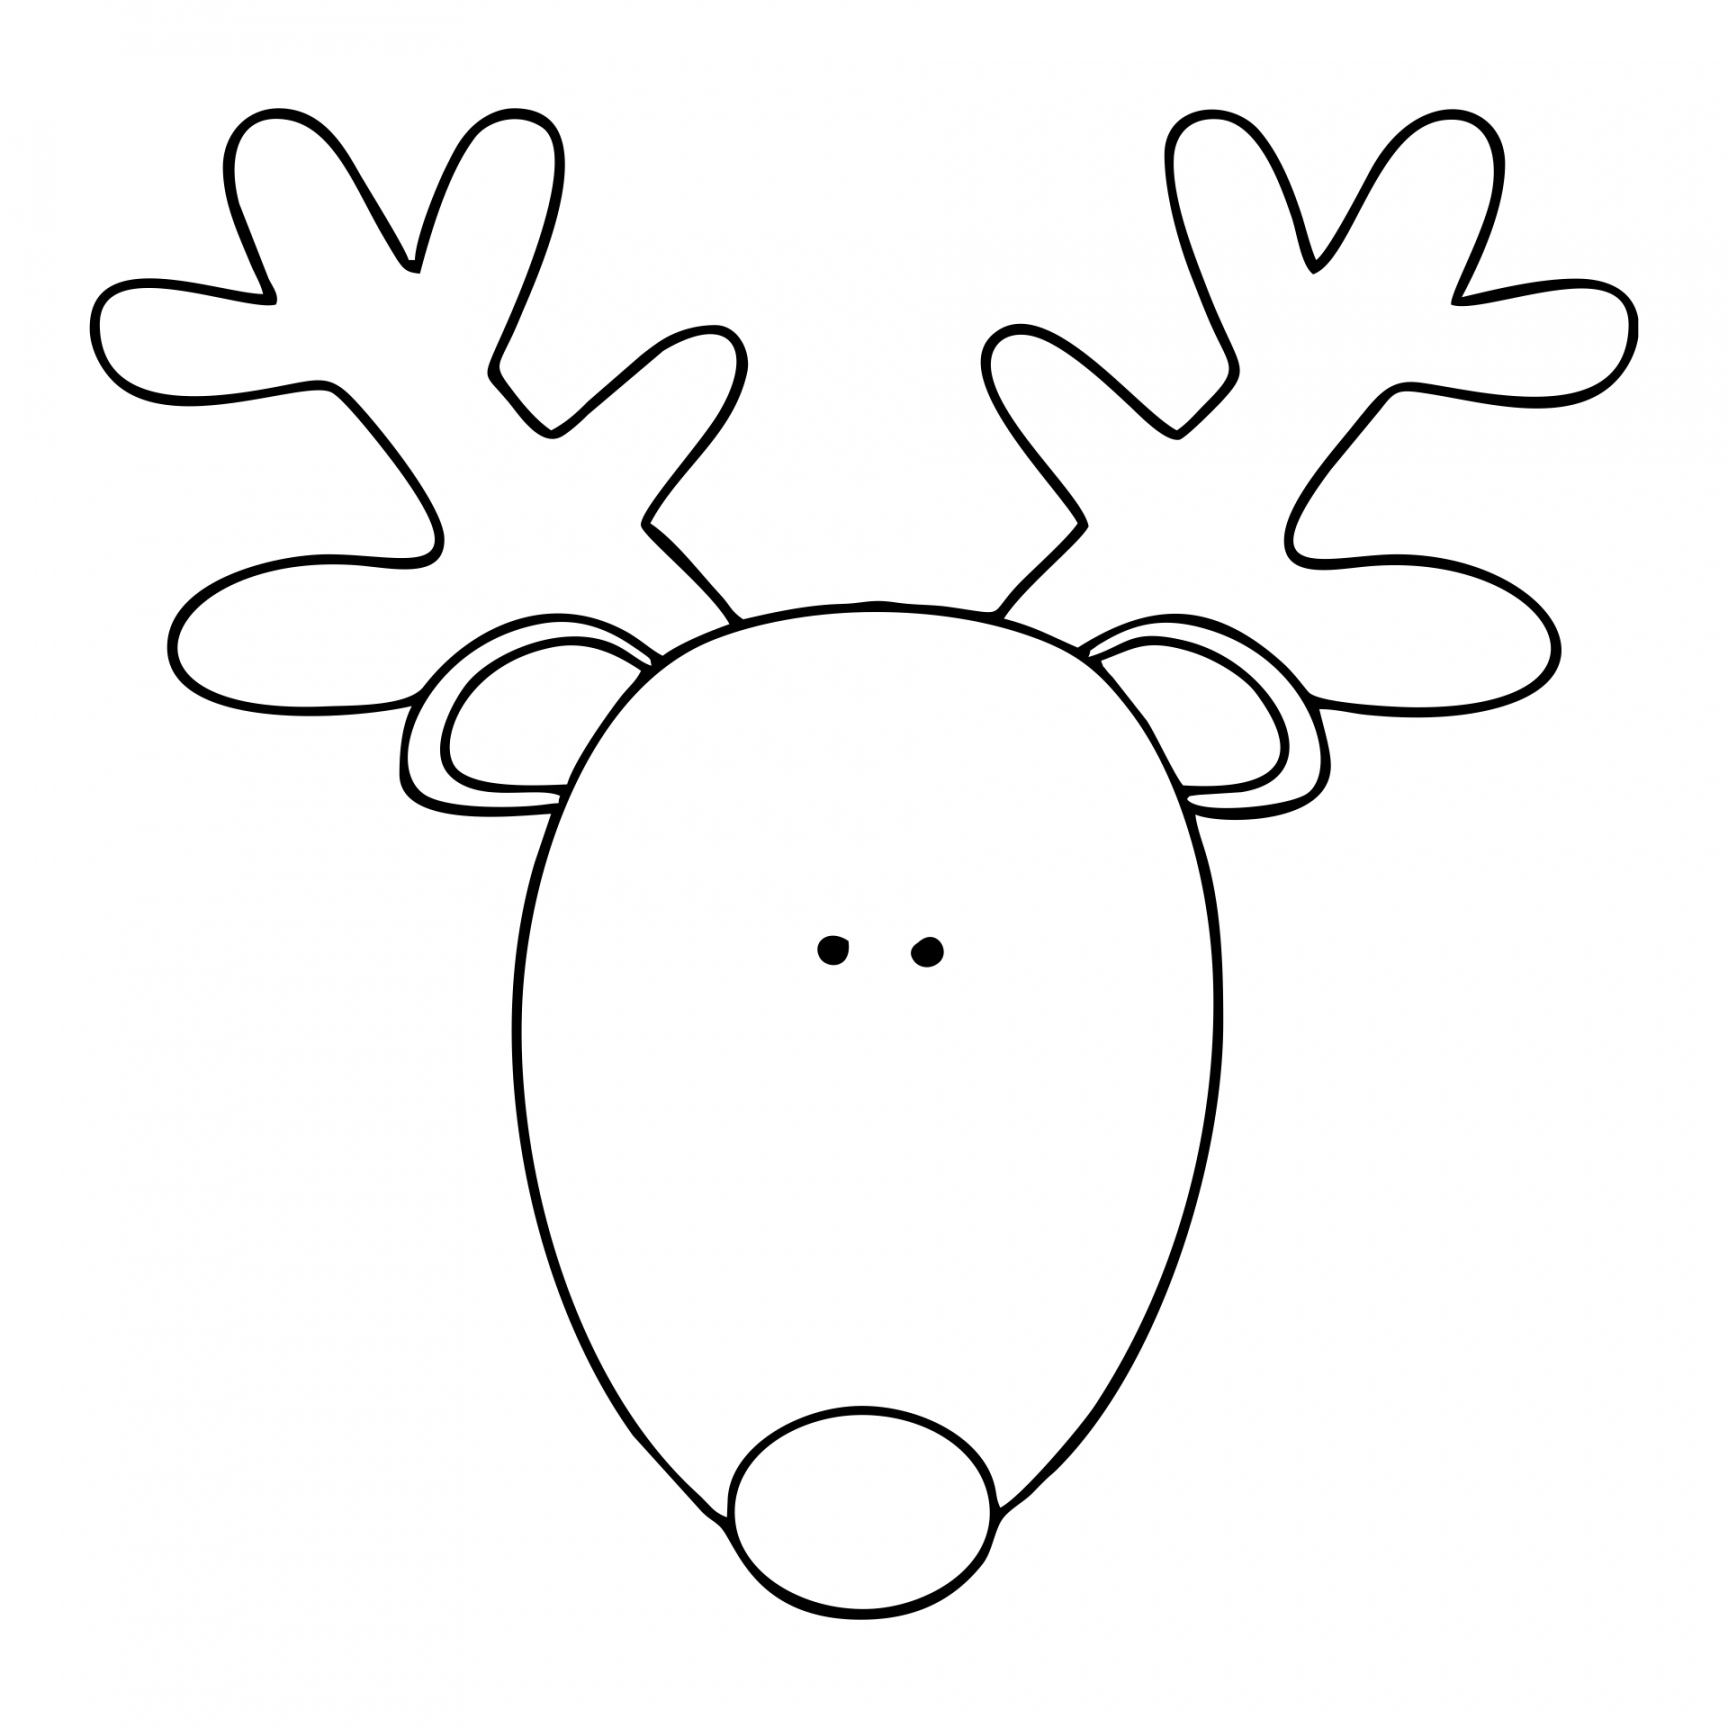 Best Printable Reindeer Patterns - printablee - Printable Reindeer Template